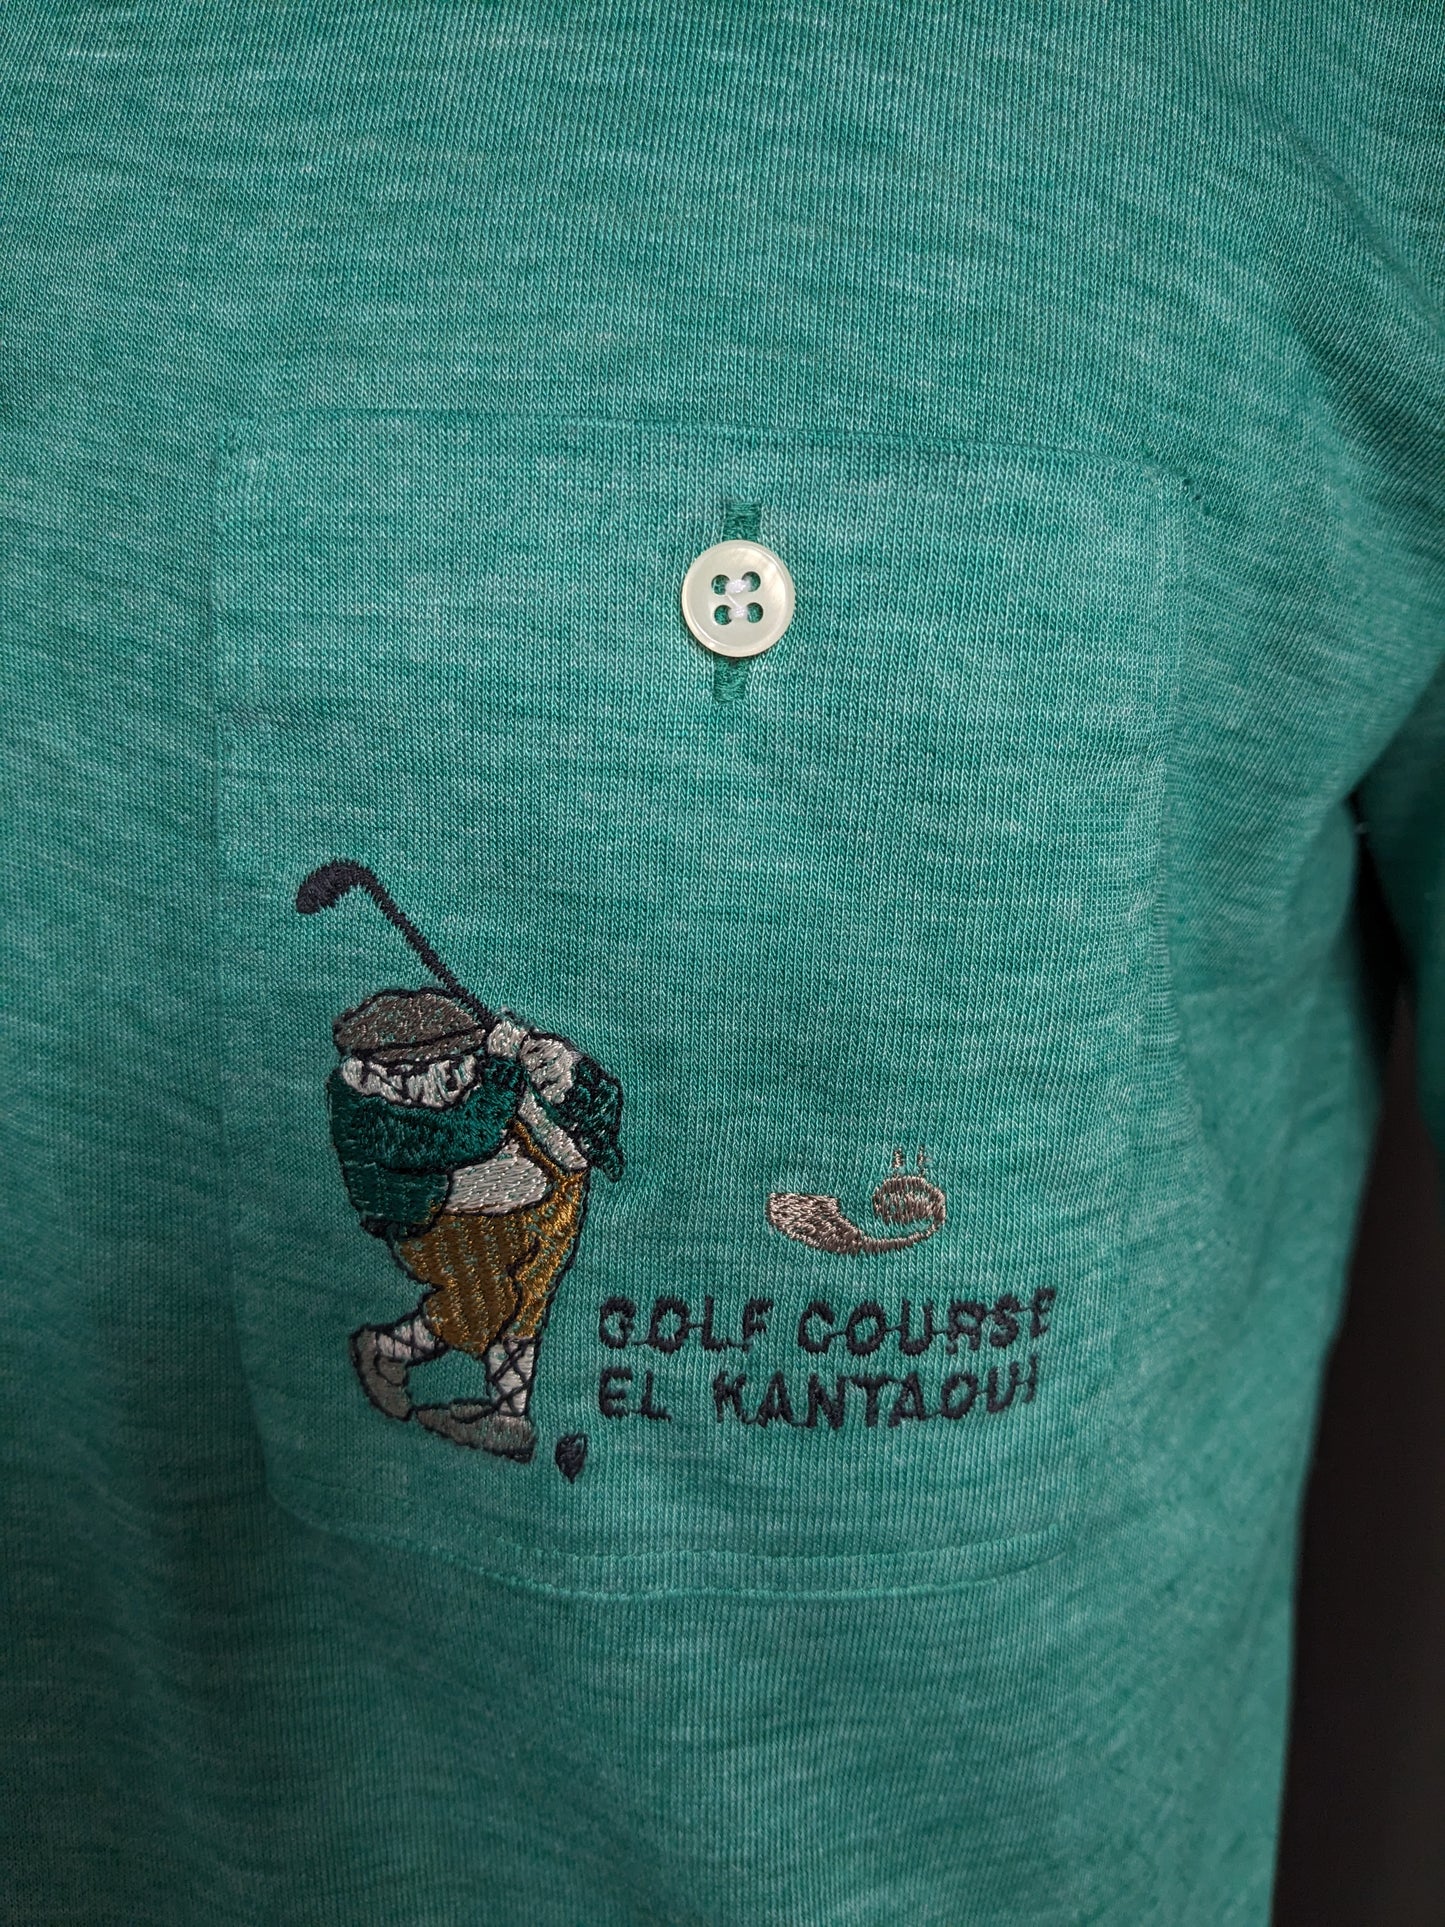 Vintage Gerard Bert Golf Polo. "Cours de golf El Kantaoui". Vert mélangé. Taille L.